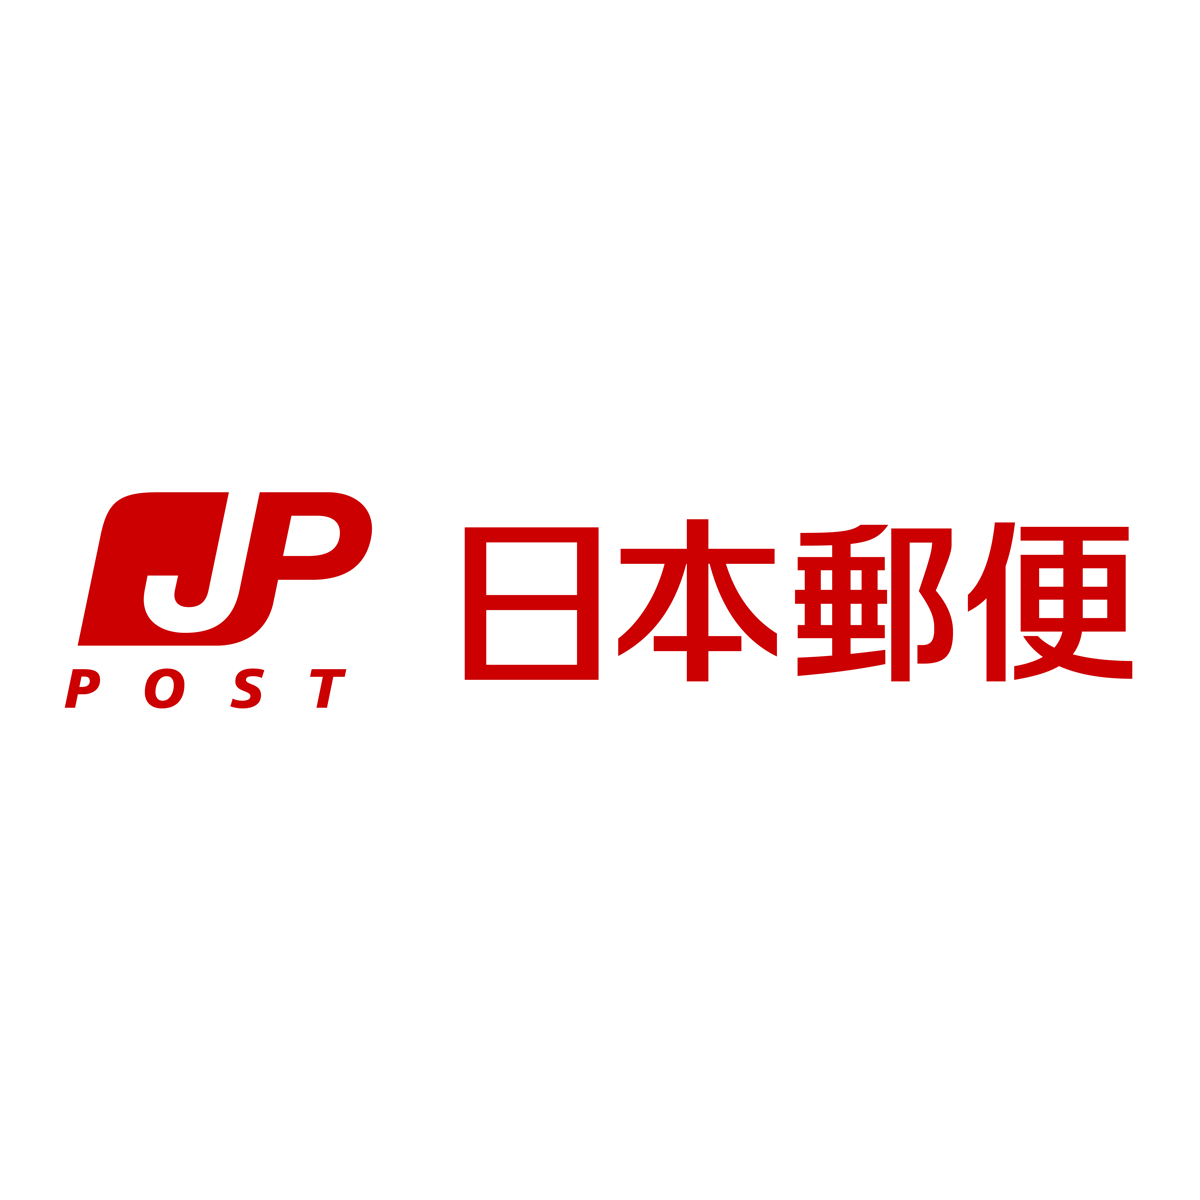 郵便局 日本郵便株式会社